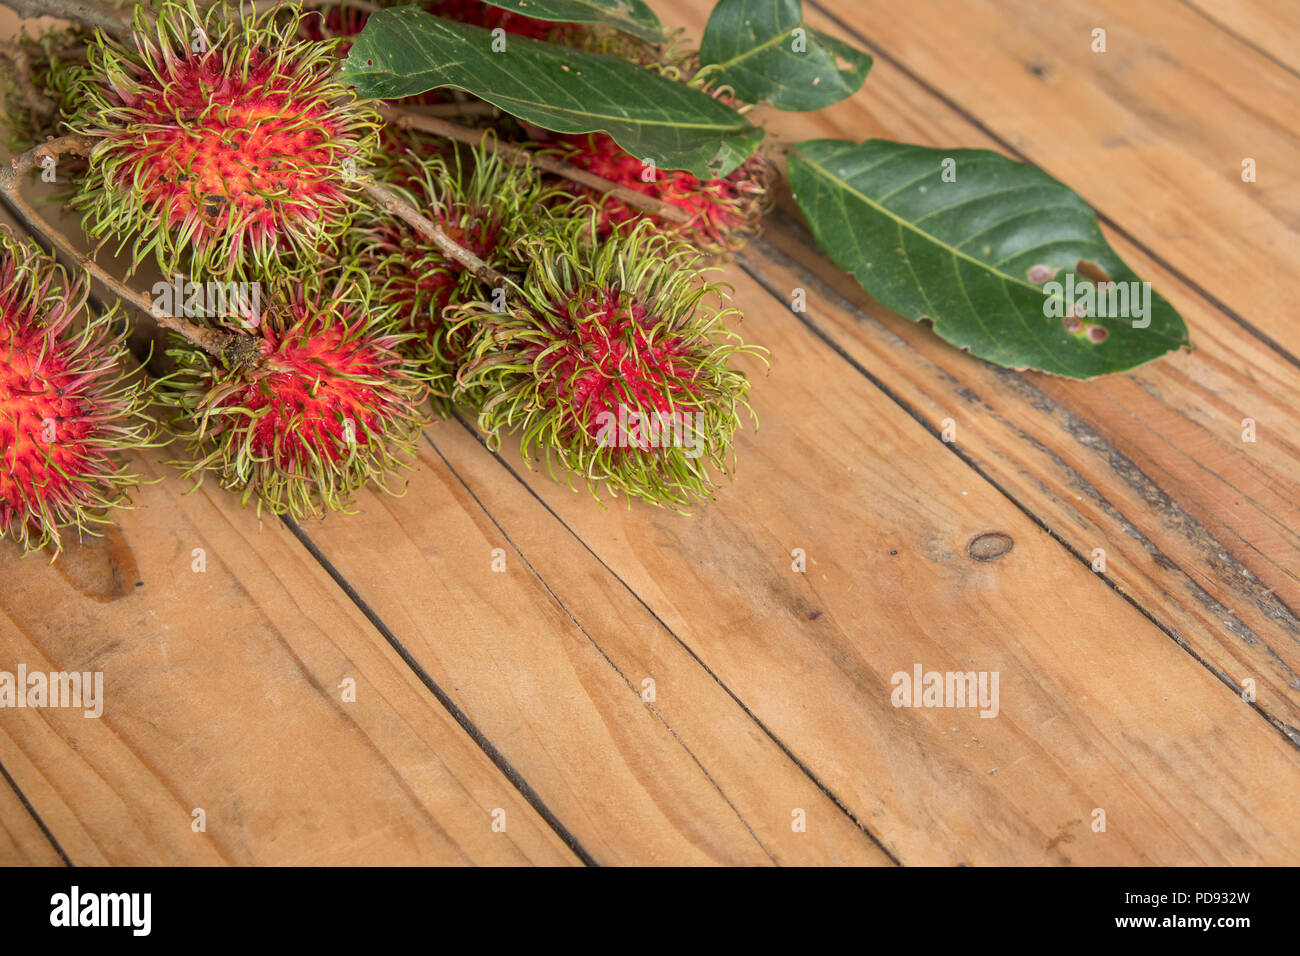 Roten rambutan Nephelium lappaceum auf broun Board. Obst tropischen Baum der Familie Sapindaceae, beheimatet in Südostasien, in vielen Ländern angebaut Stockfoto